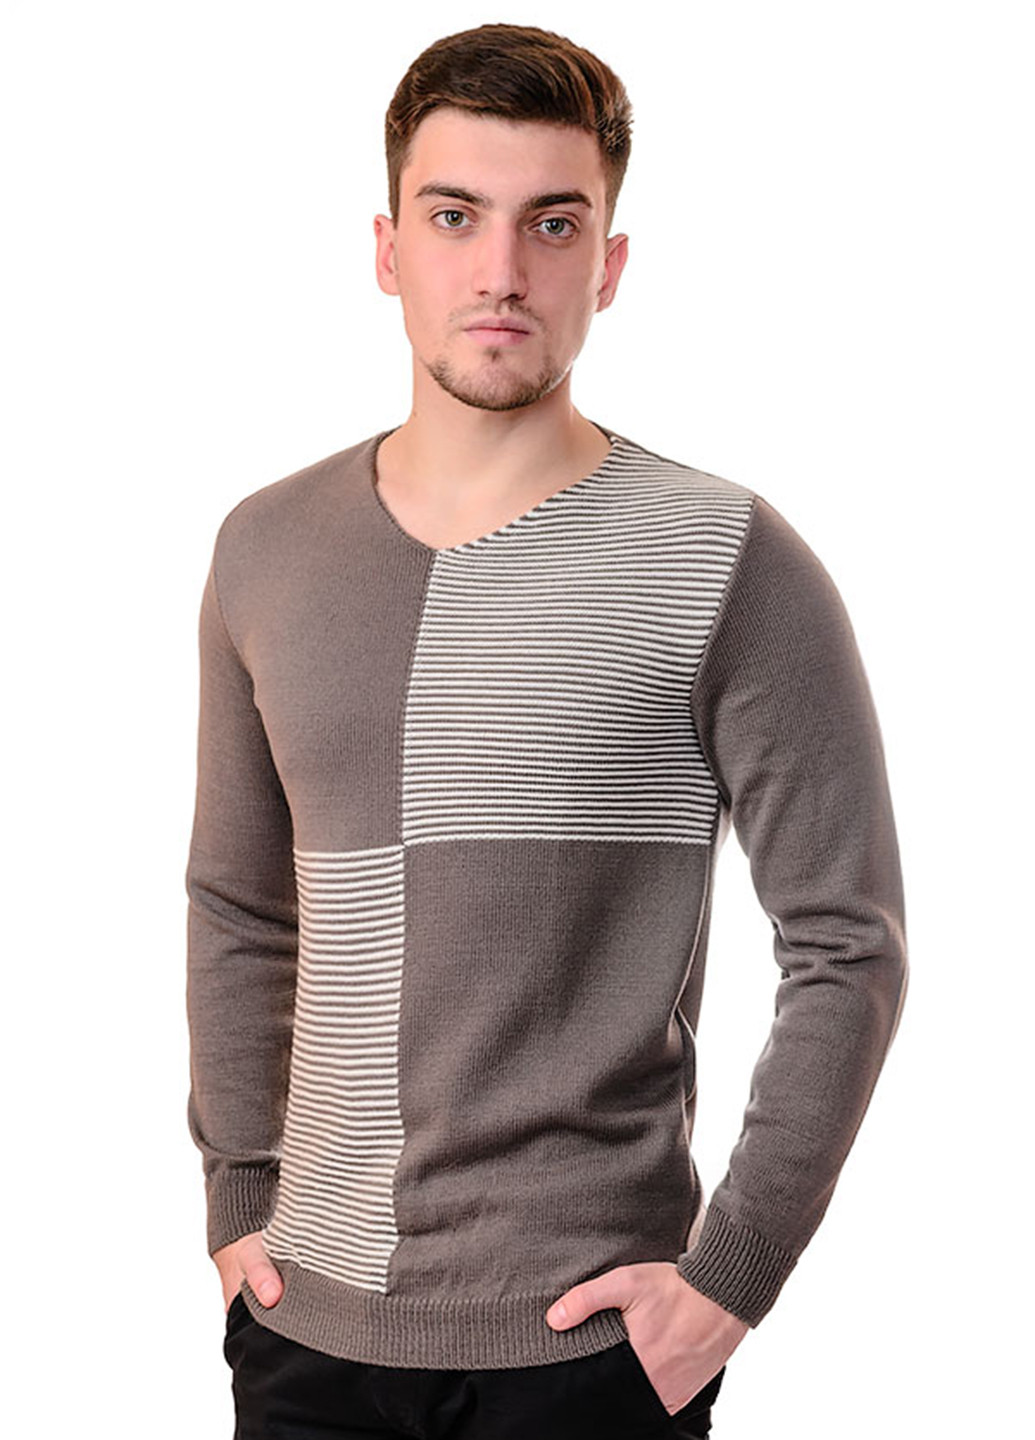 Светло-коричневый демисезонный пуловер пуловер SVTR